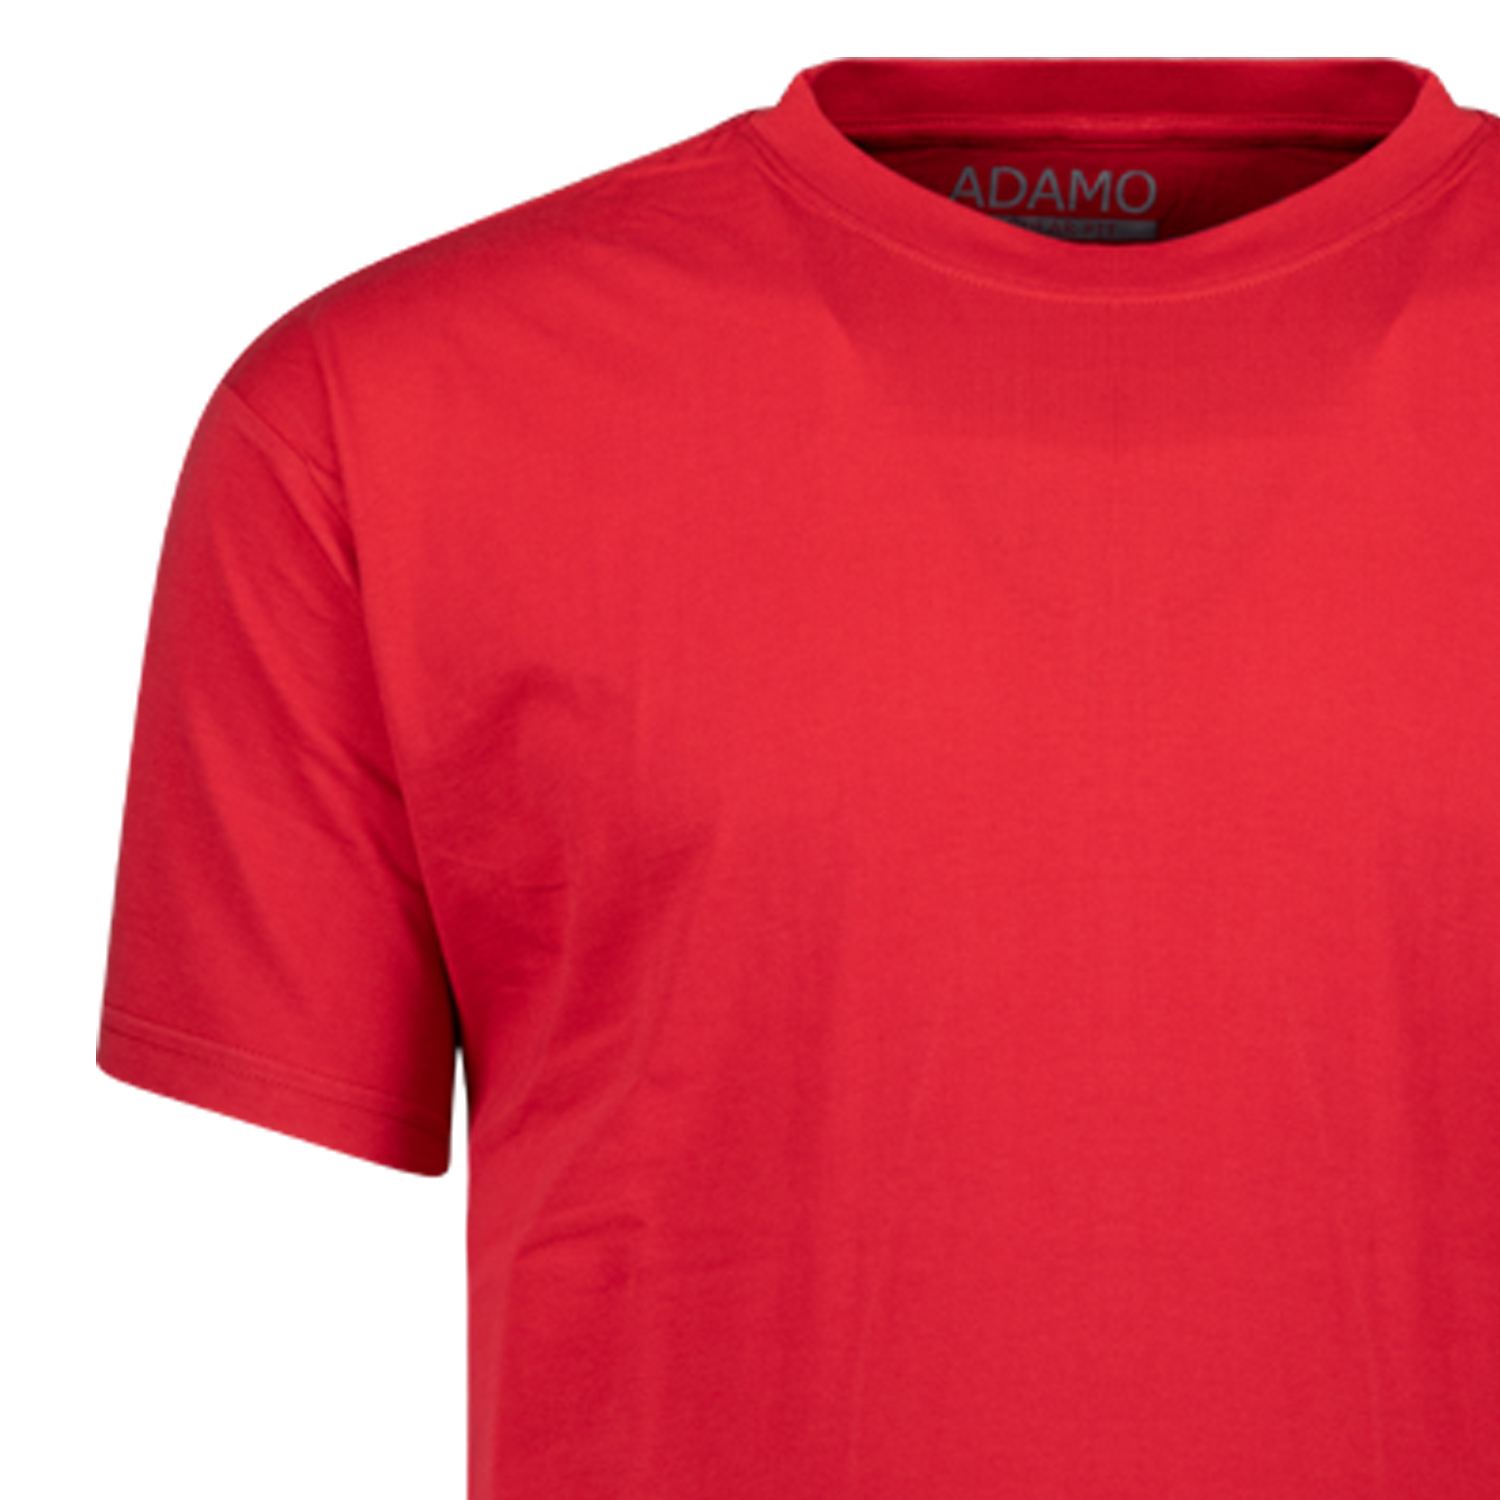 Rotes Herren Übergrößen Shirt 2XL-10XL von ADAMO Modell Kevin REGULAR FIT mit Rundhals